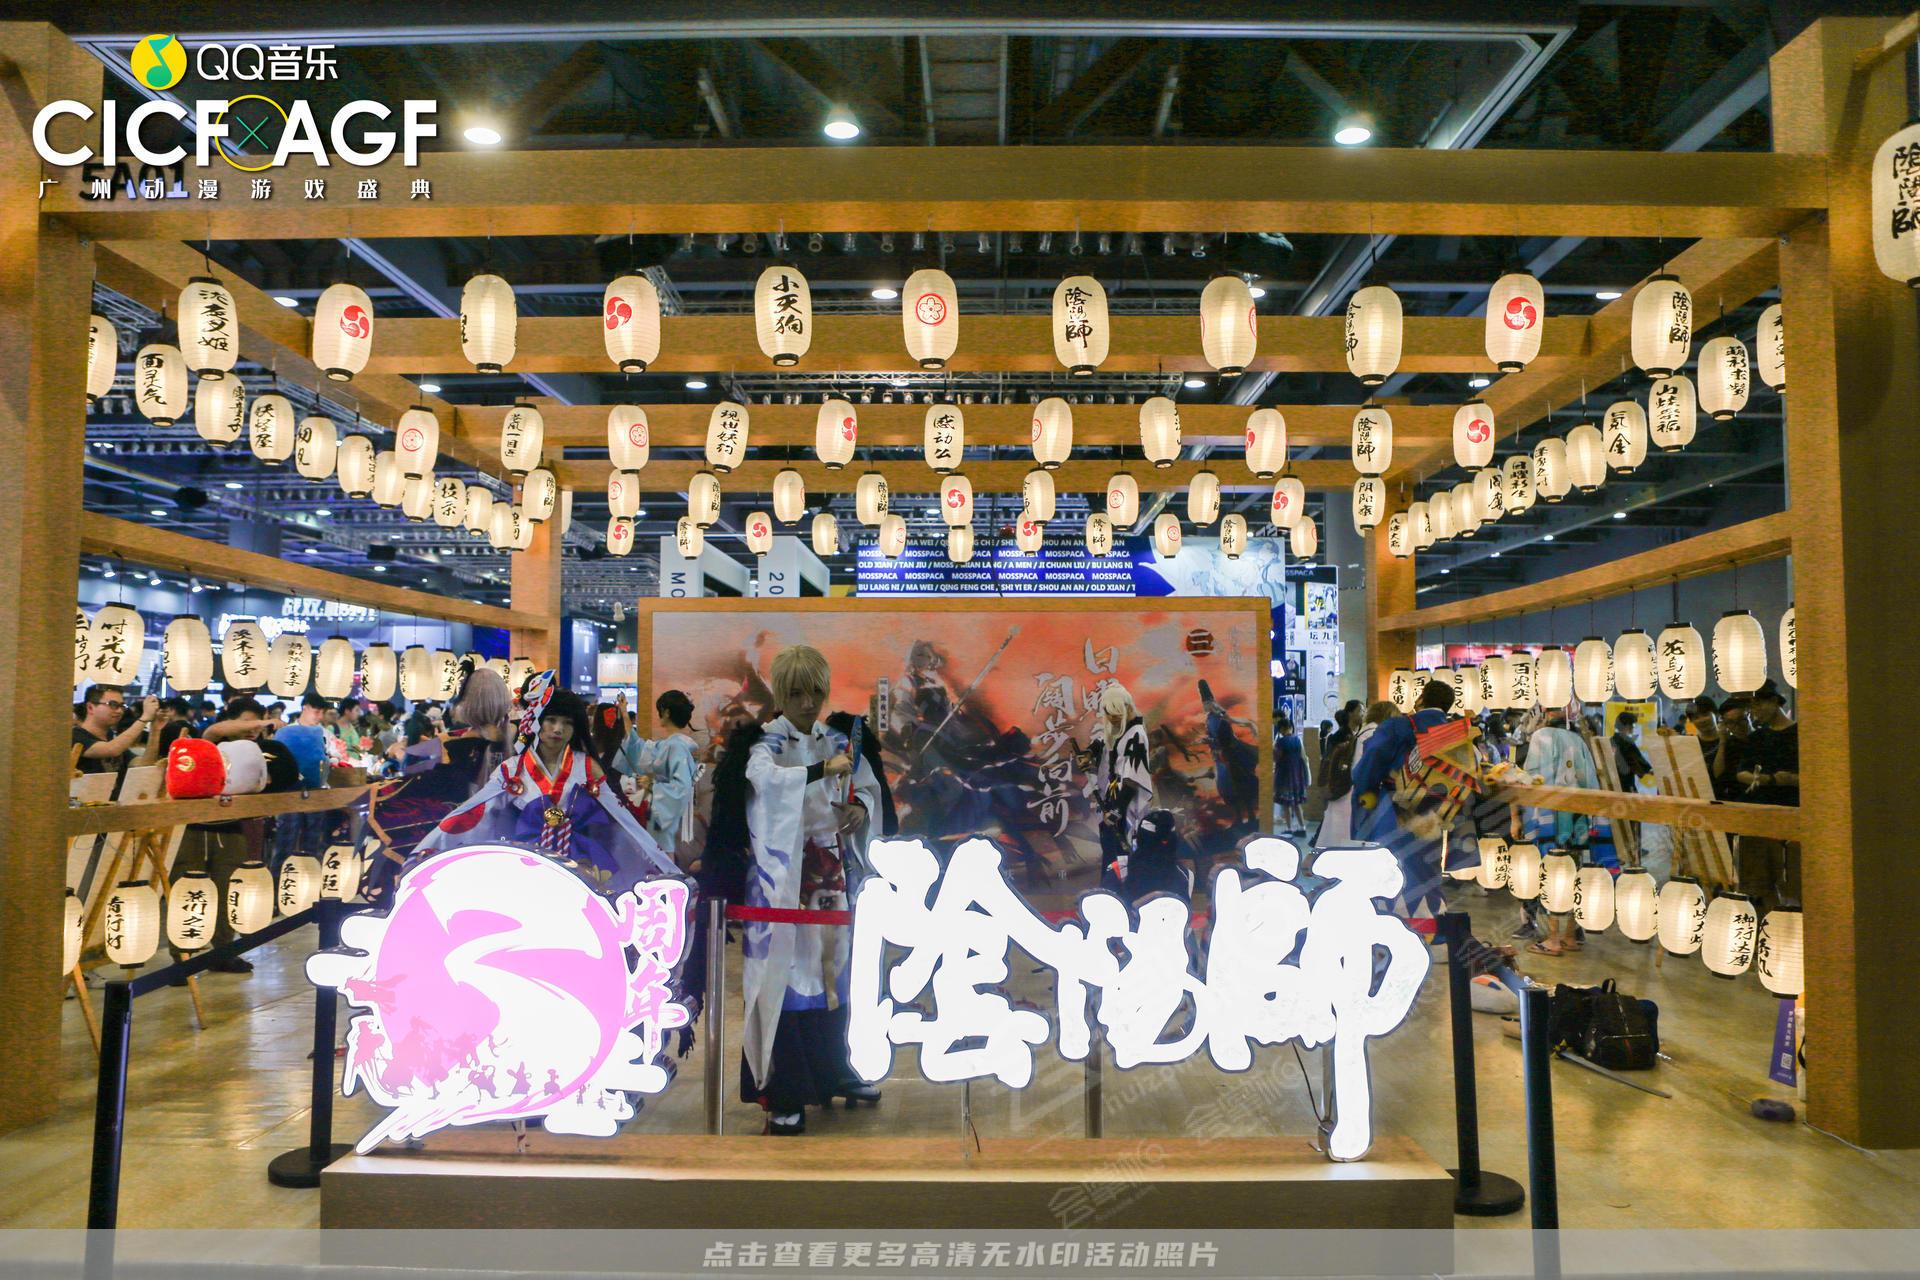 QQ音乐 CICF X AGF 广州动漫游戏盛典